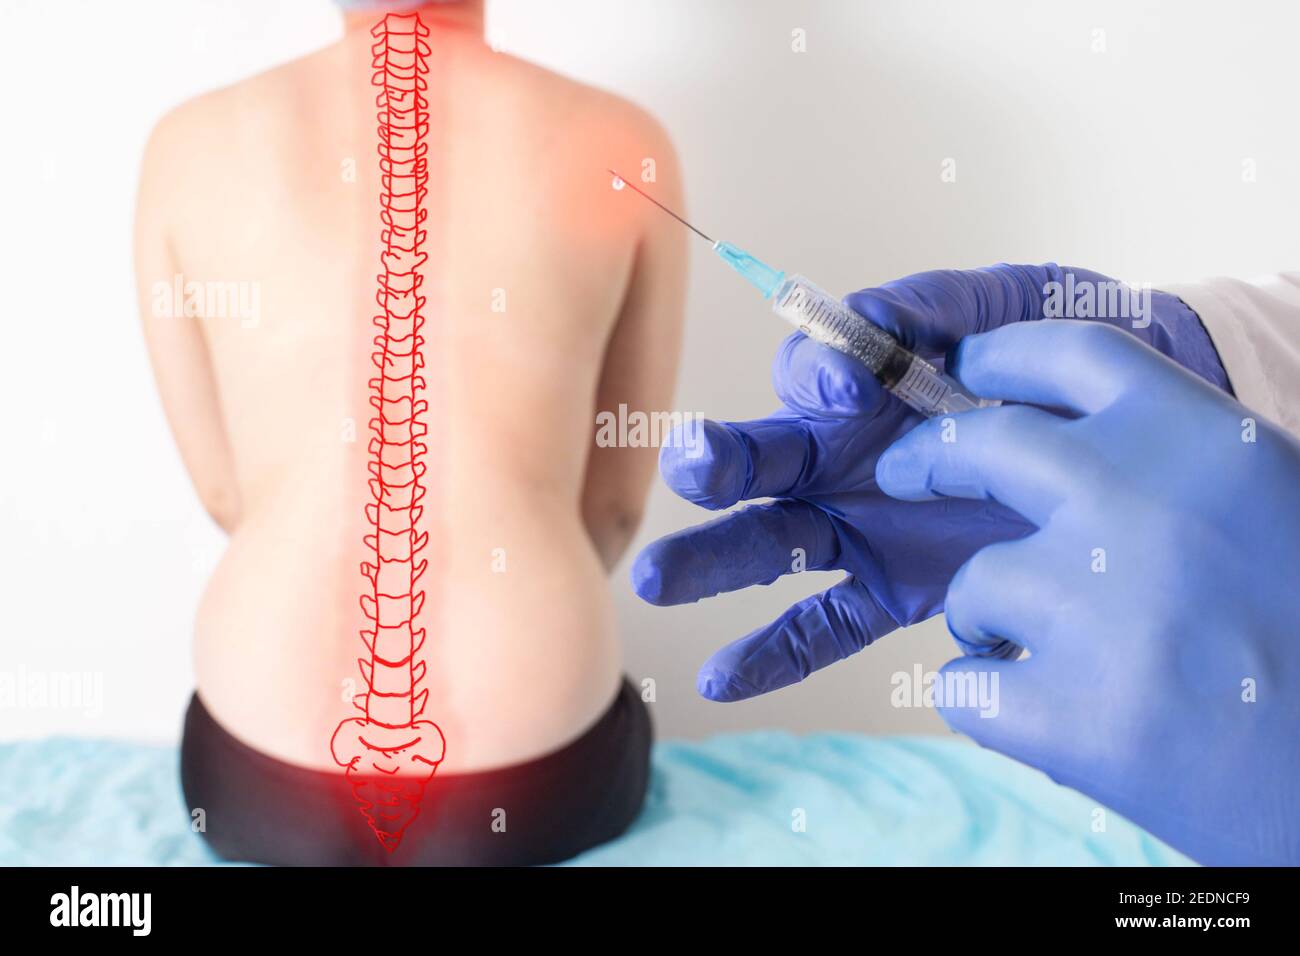 Der Arzt hält eine Spritze mit medizinischer Medizin vor dem Hintergrund  eines Patienten mit Rückenschmerzen. Konzept der medizinischen Behandlung  Blockade mit Ozon Stockfotografie - Alamy